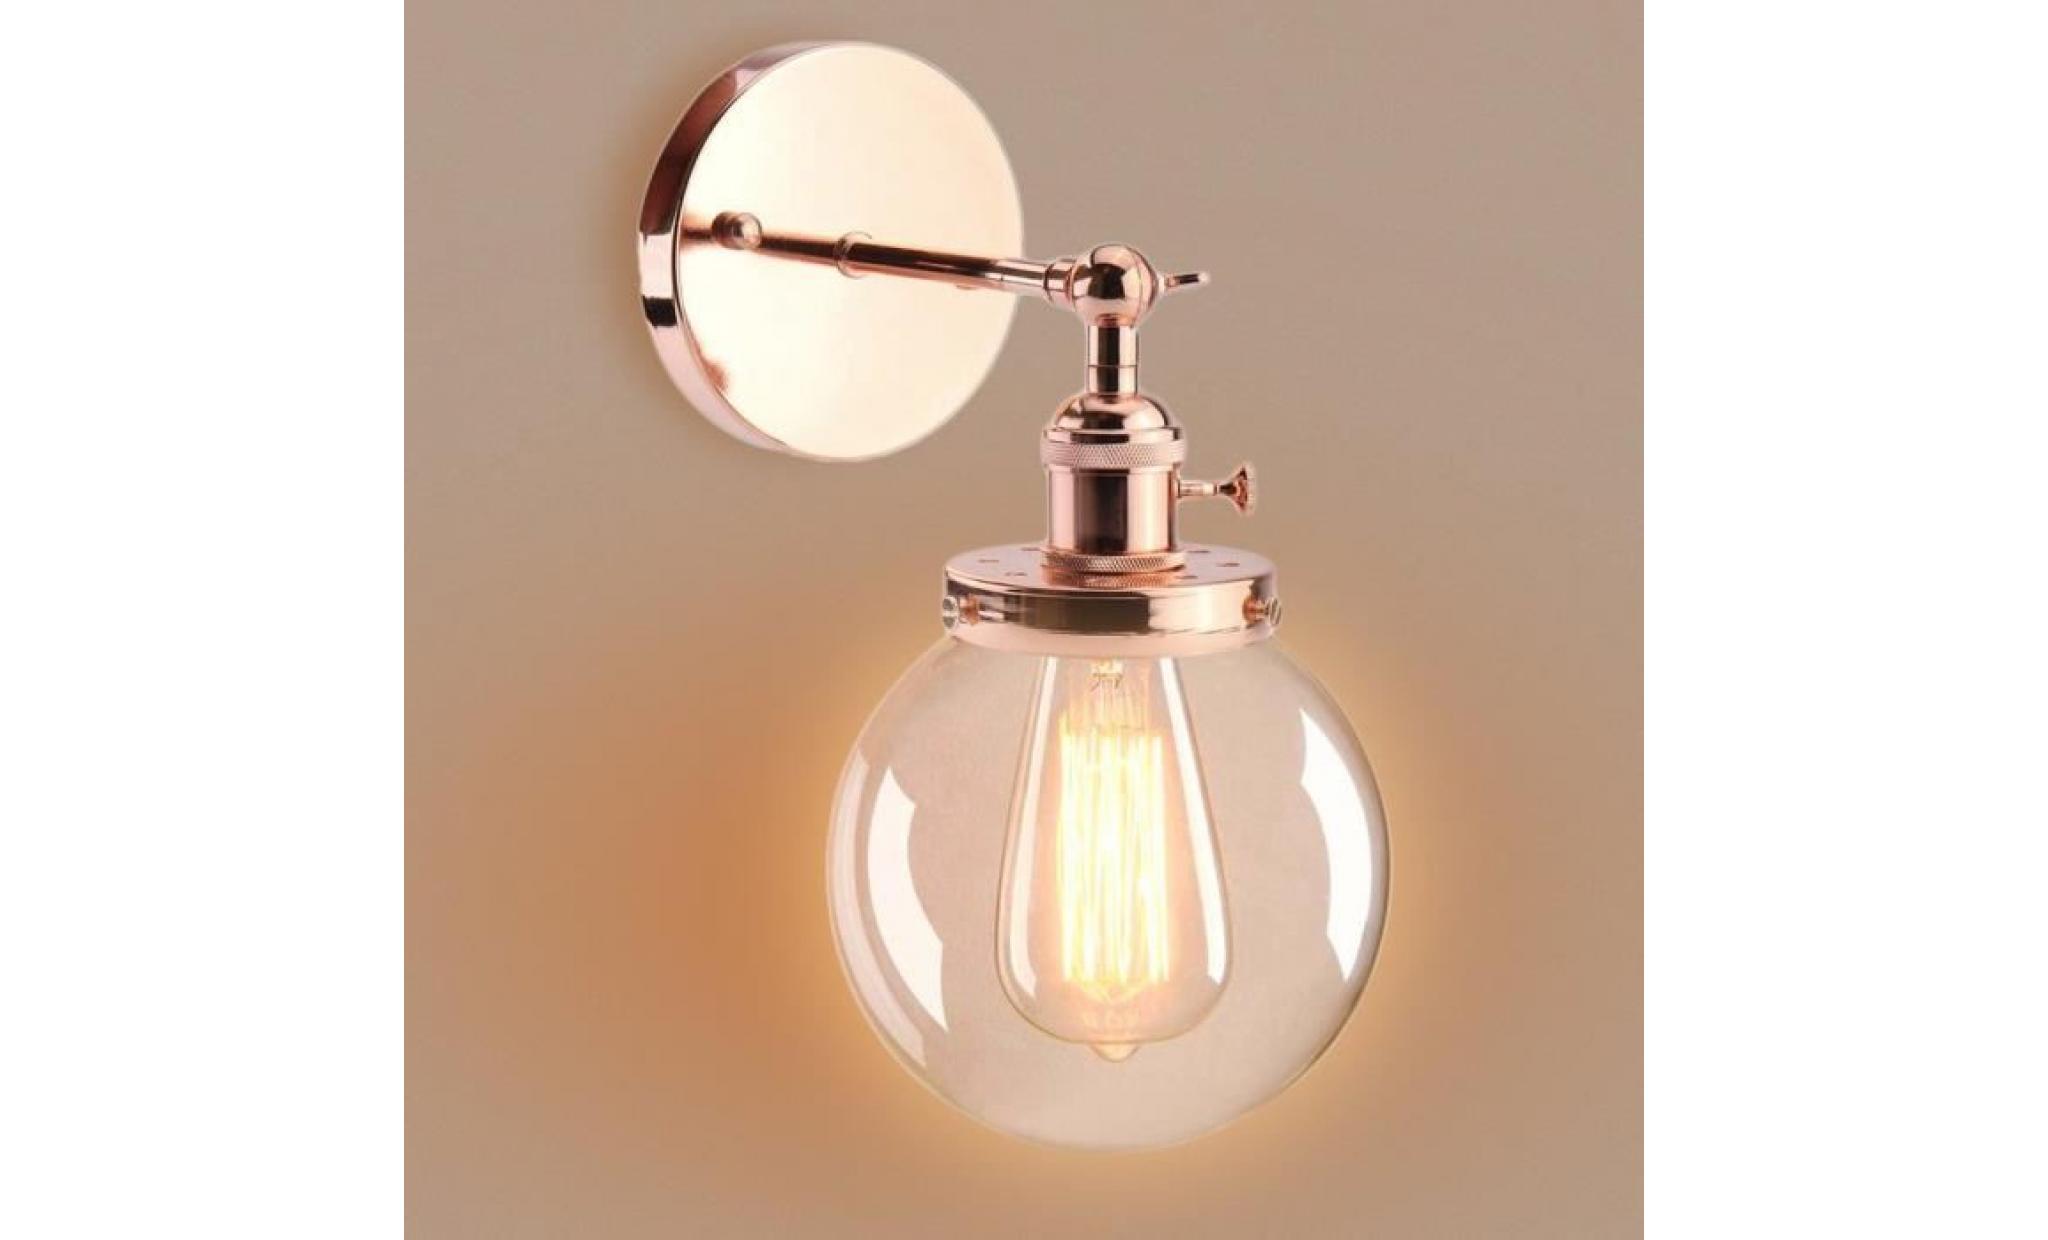 applique d'interieur e27 métal industriel vintage luminaires lustre lampe rose doré(les ampoules e27 non inclus)